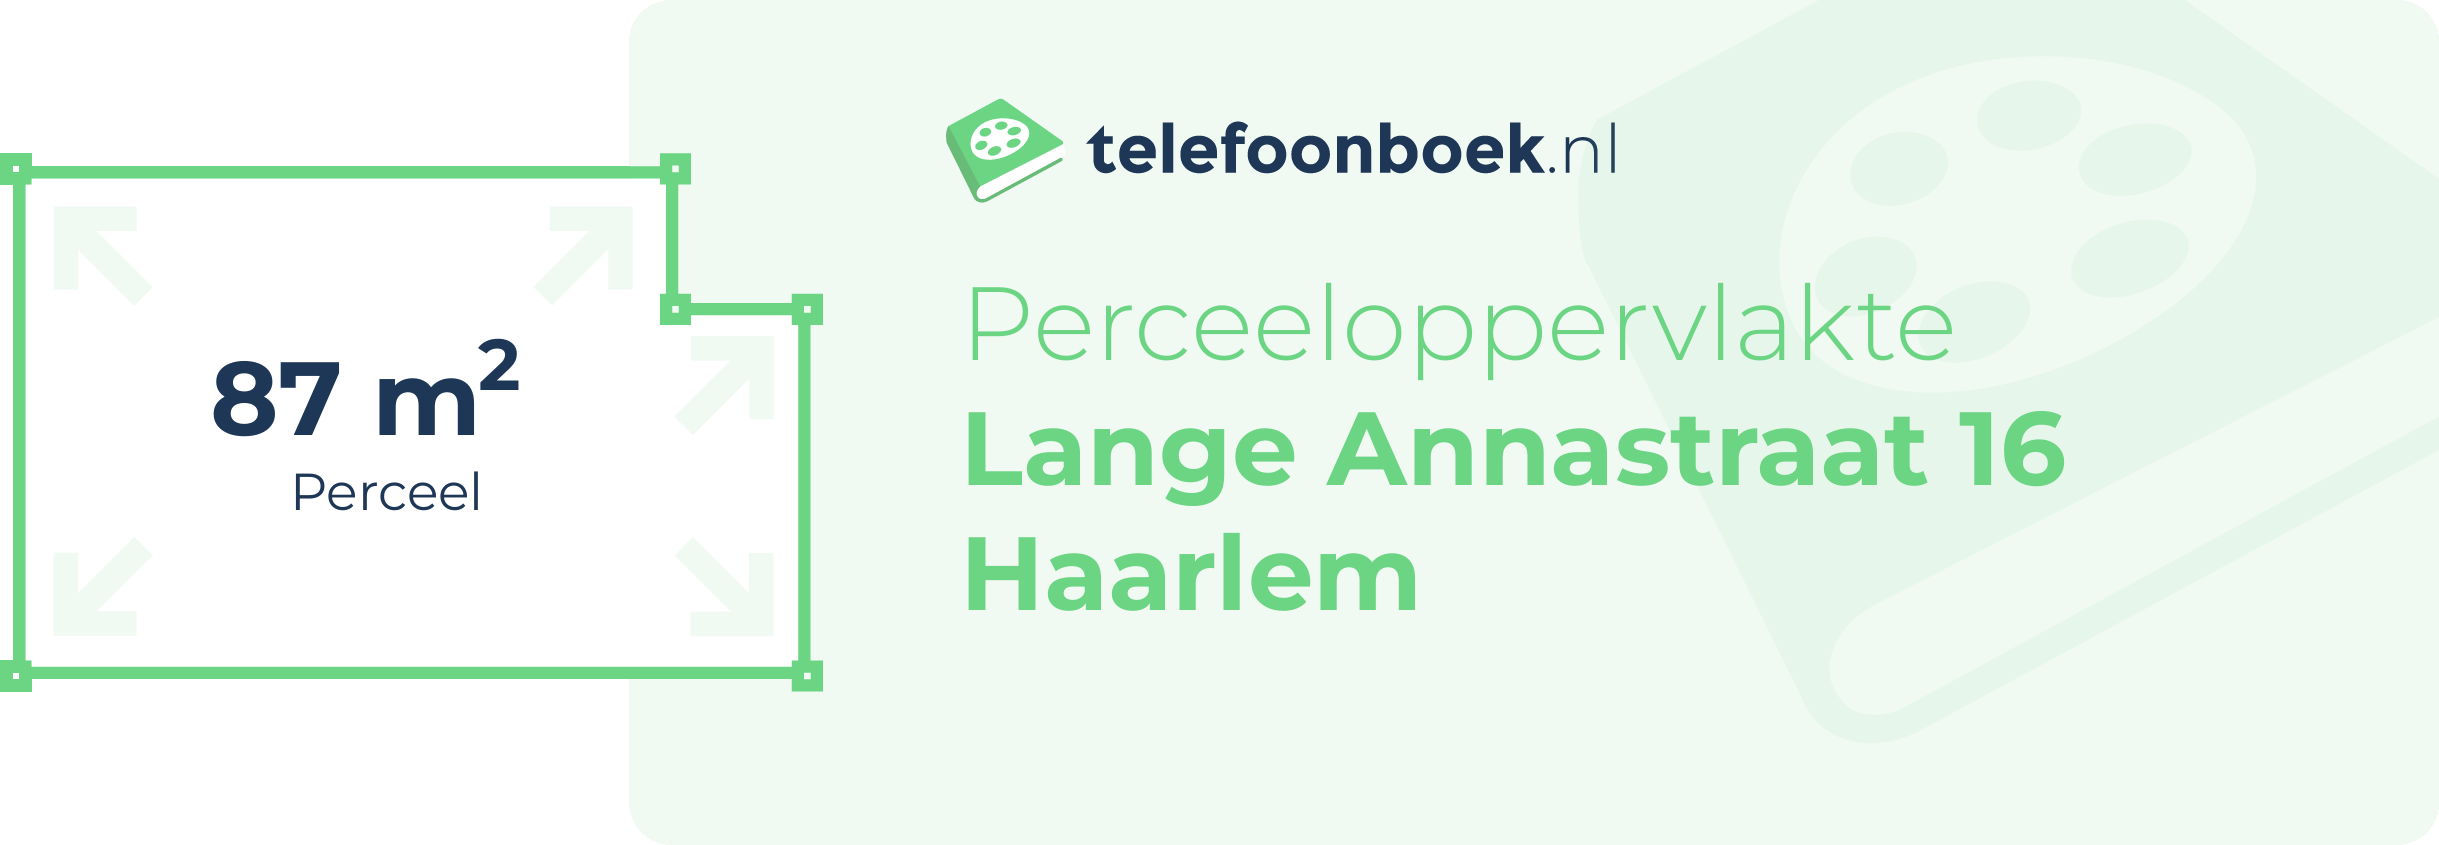 Perceeloppervlakte Lange Annastraat 16 Haarlem